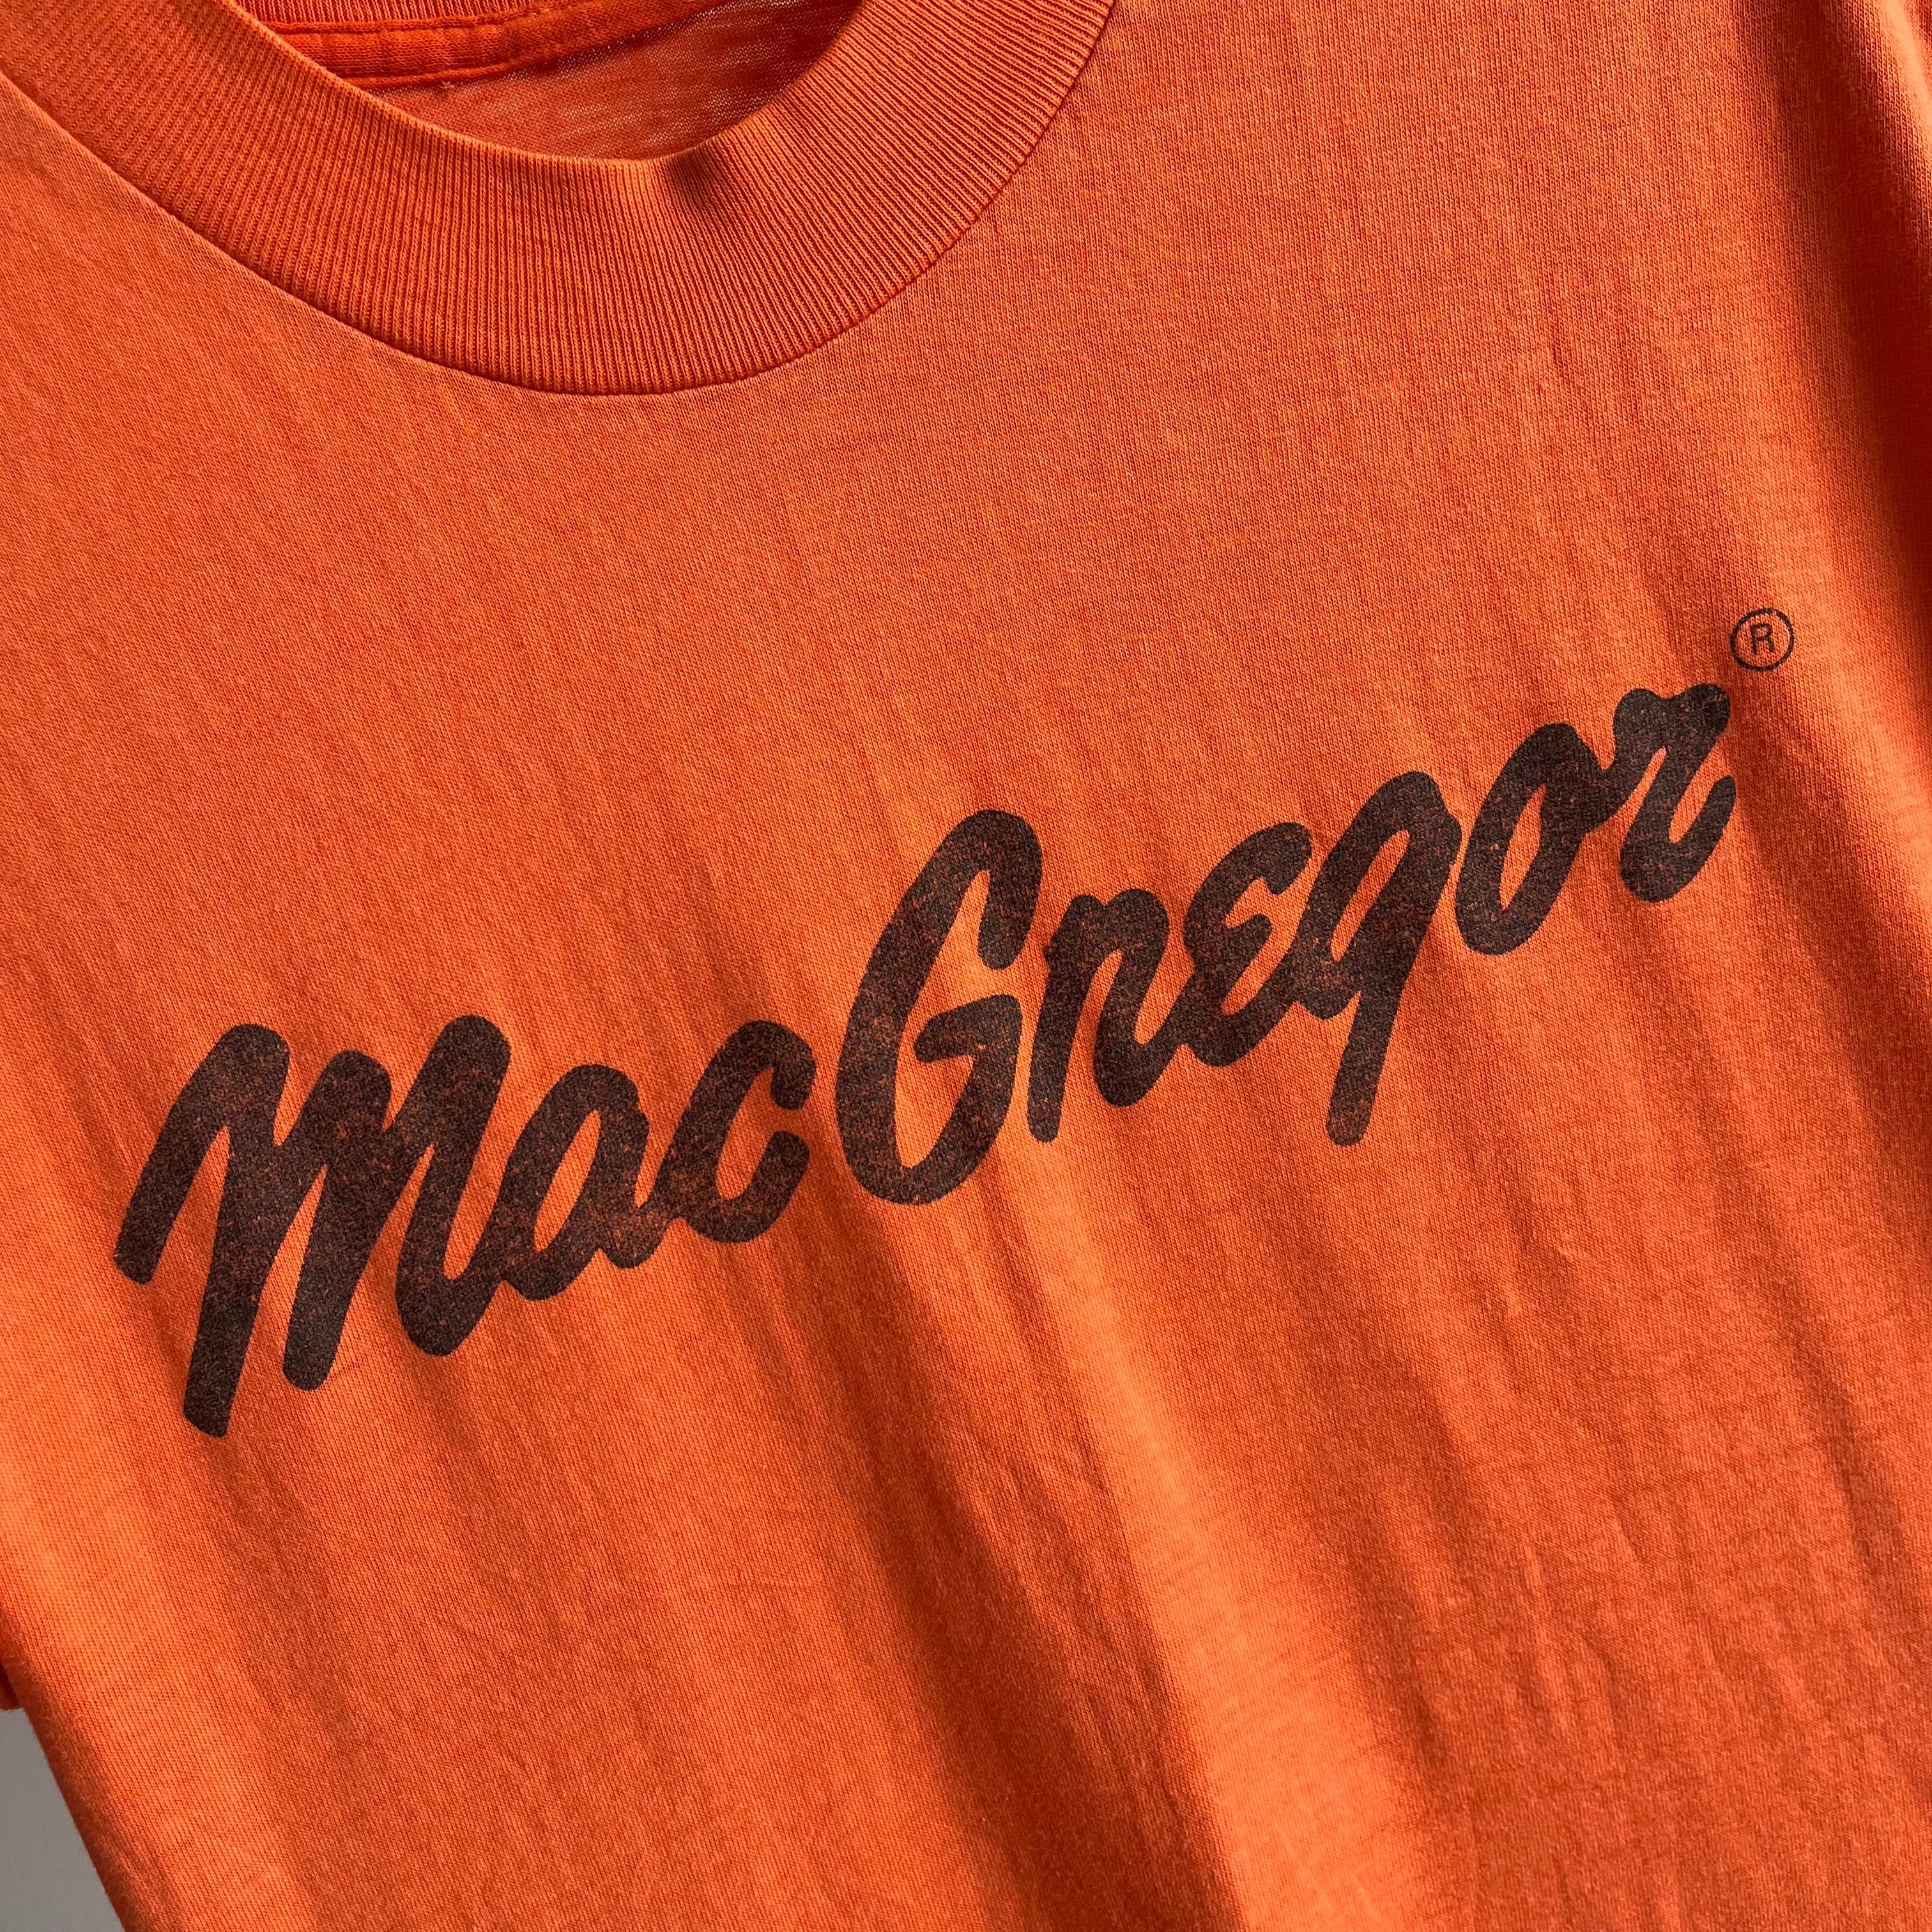 T-shirt MacGregor des années 1970/80